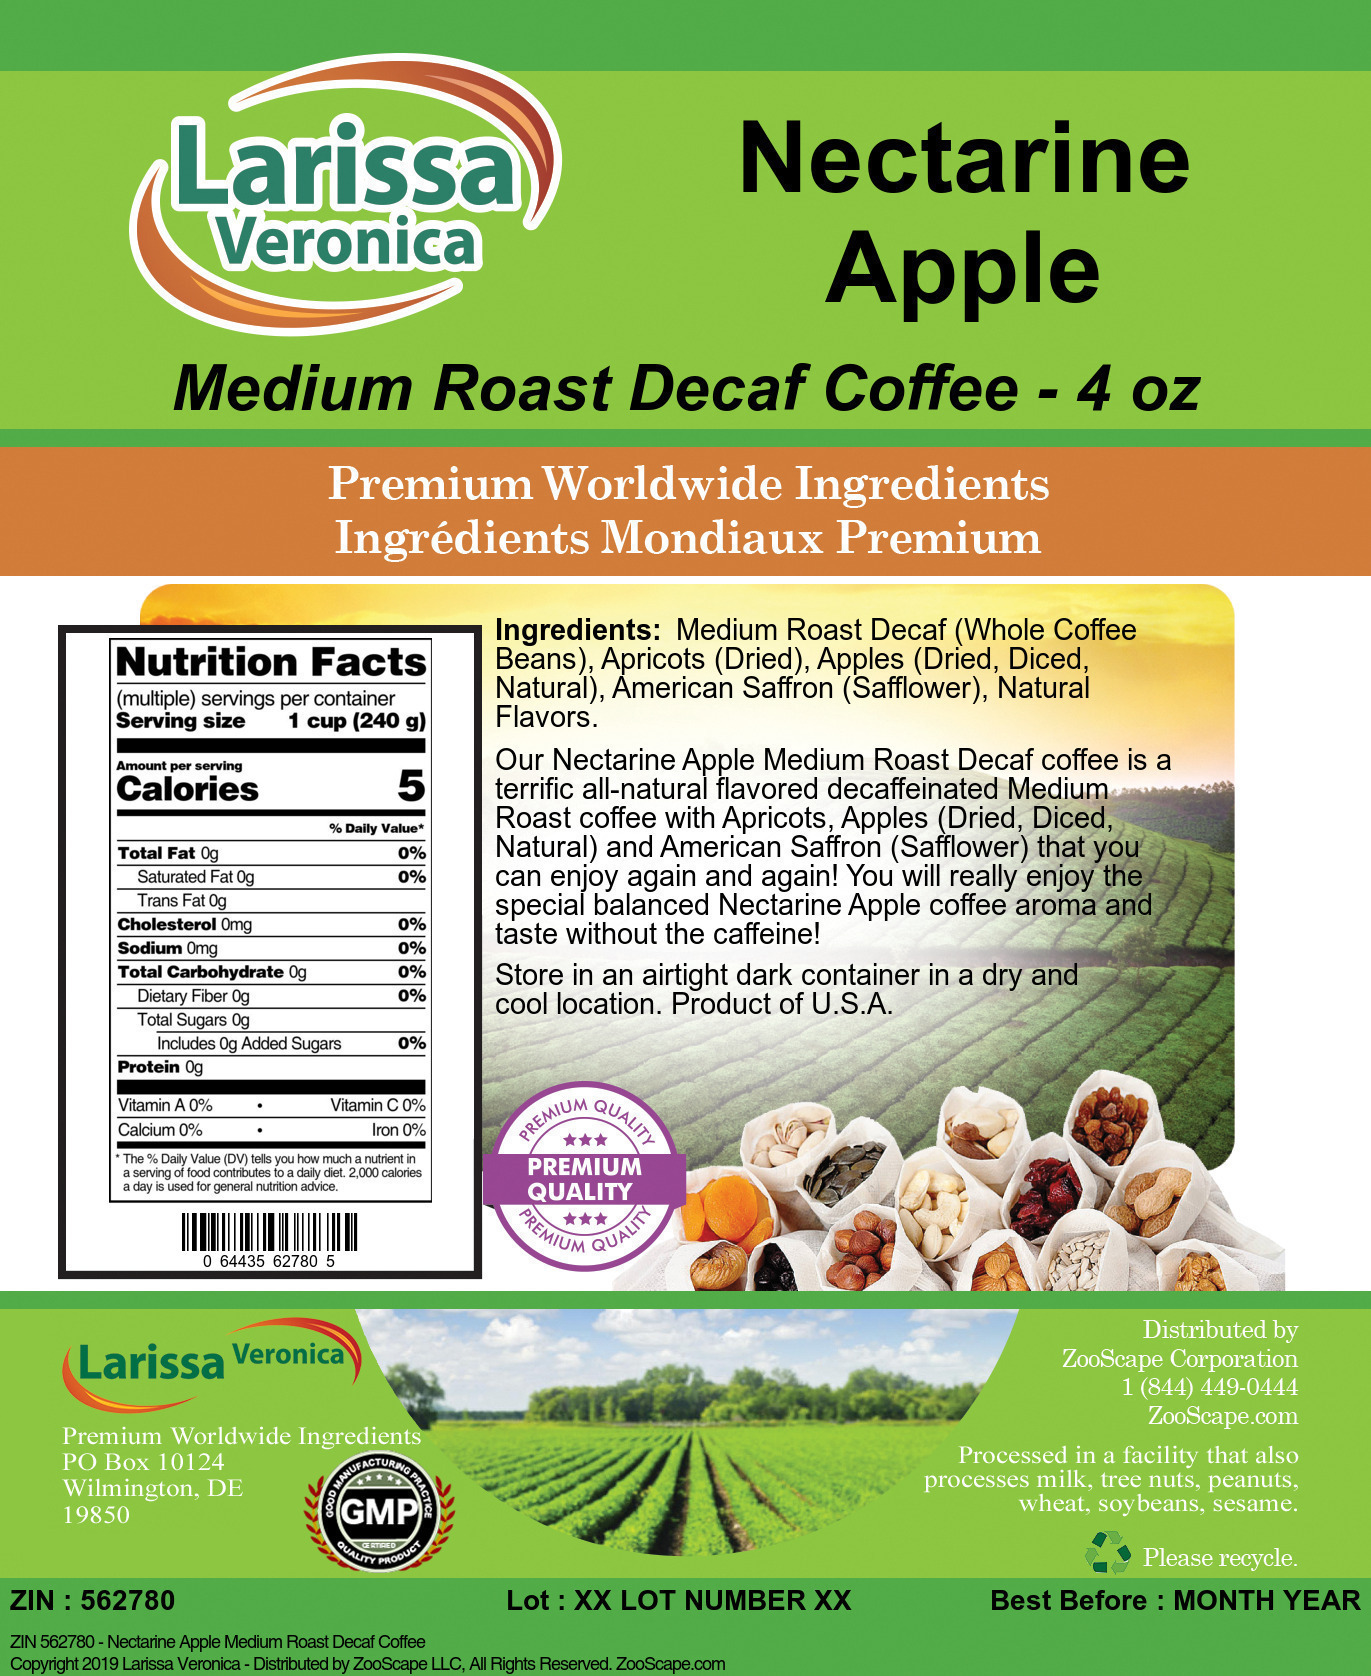 Nectarine Apple Medium Roast Decaf Coffee - Label